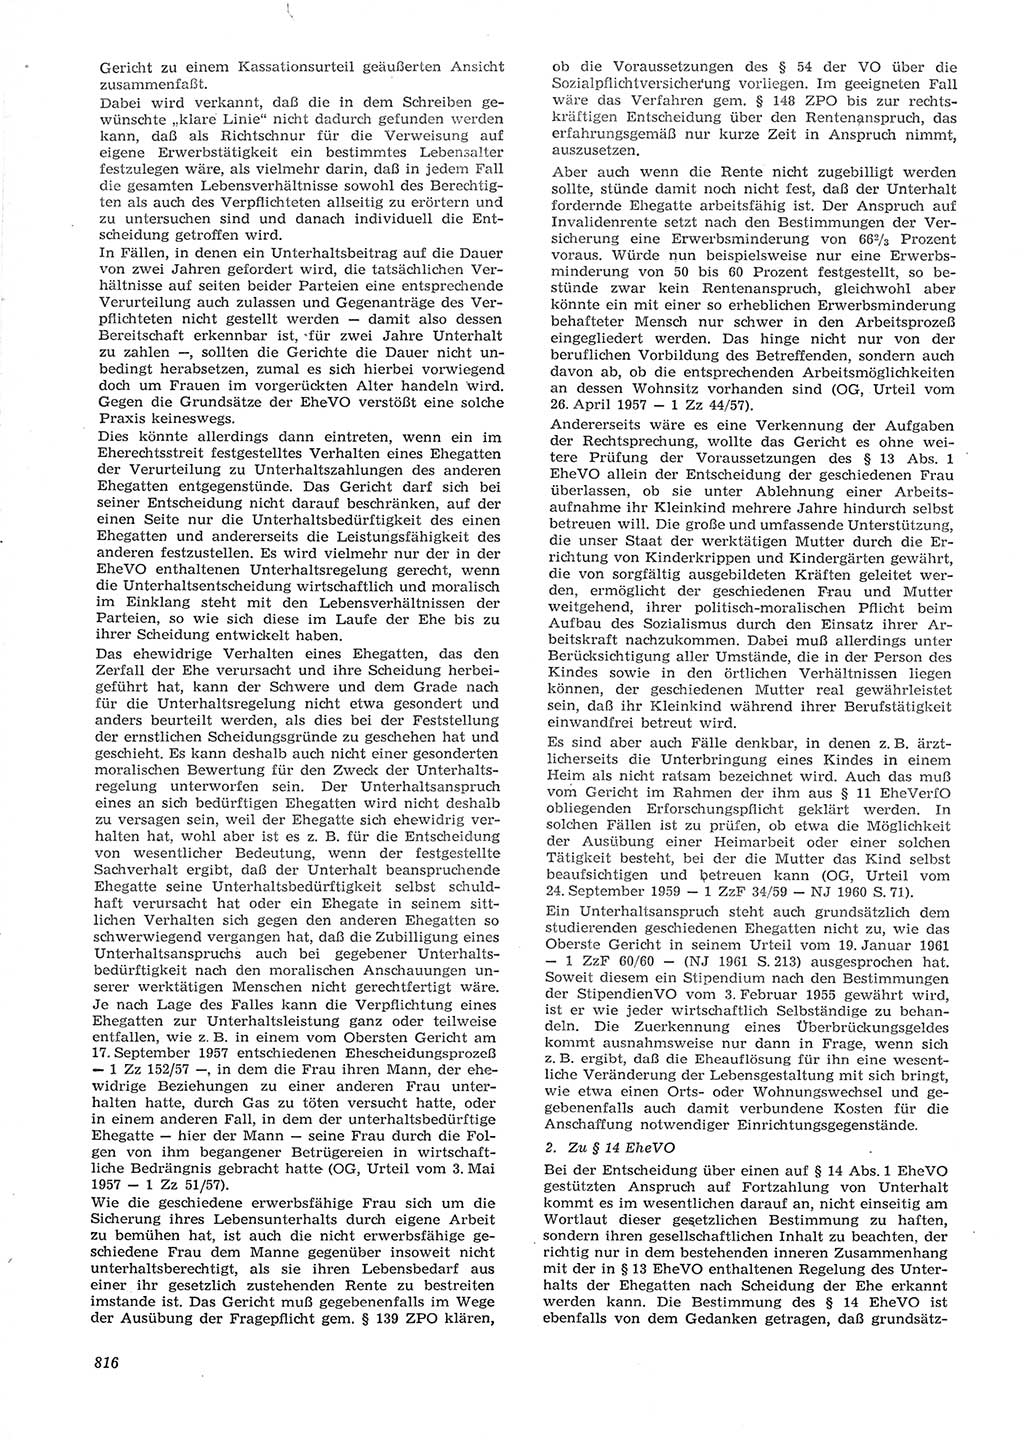 Neue Justiz (NJ), Zeitschrift für Recht und Rechtswissenschaft [Deutsche Demokratische Republik (DDR)], 15. Jahrgang 1961, Seite 816 (NJ DDR 1961, S. 816)